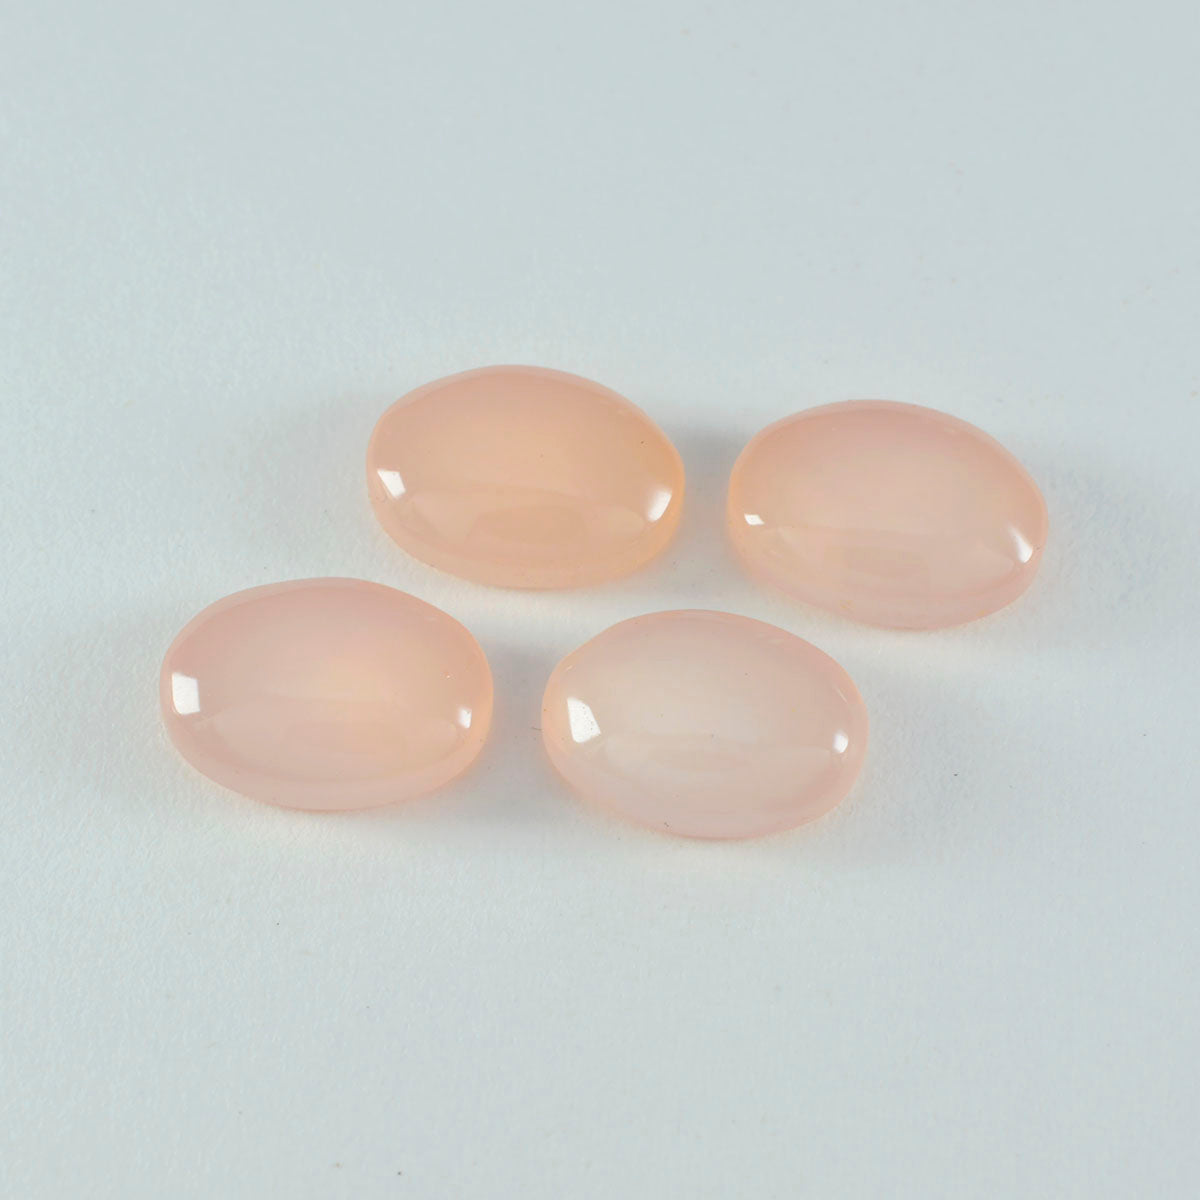 riyogems 1pc cabochon de quartz rose rose 9x11 mm forme ovale qualité fantastique pierre précieuse en vrac